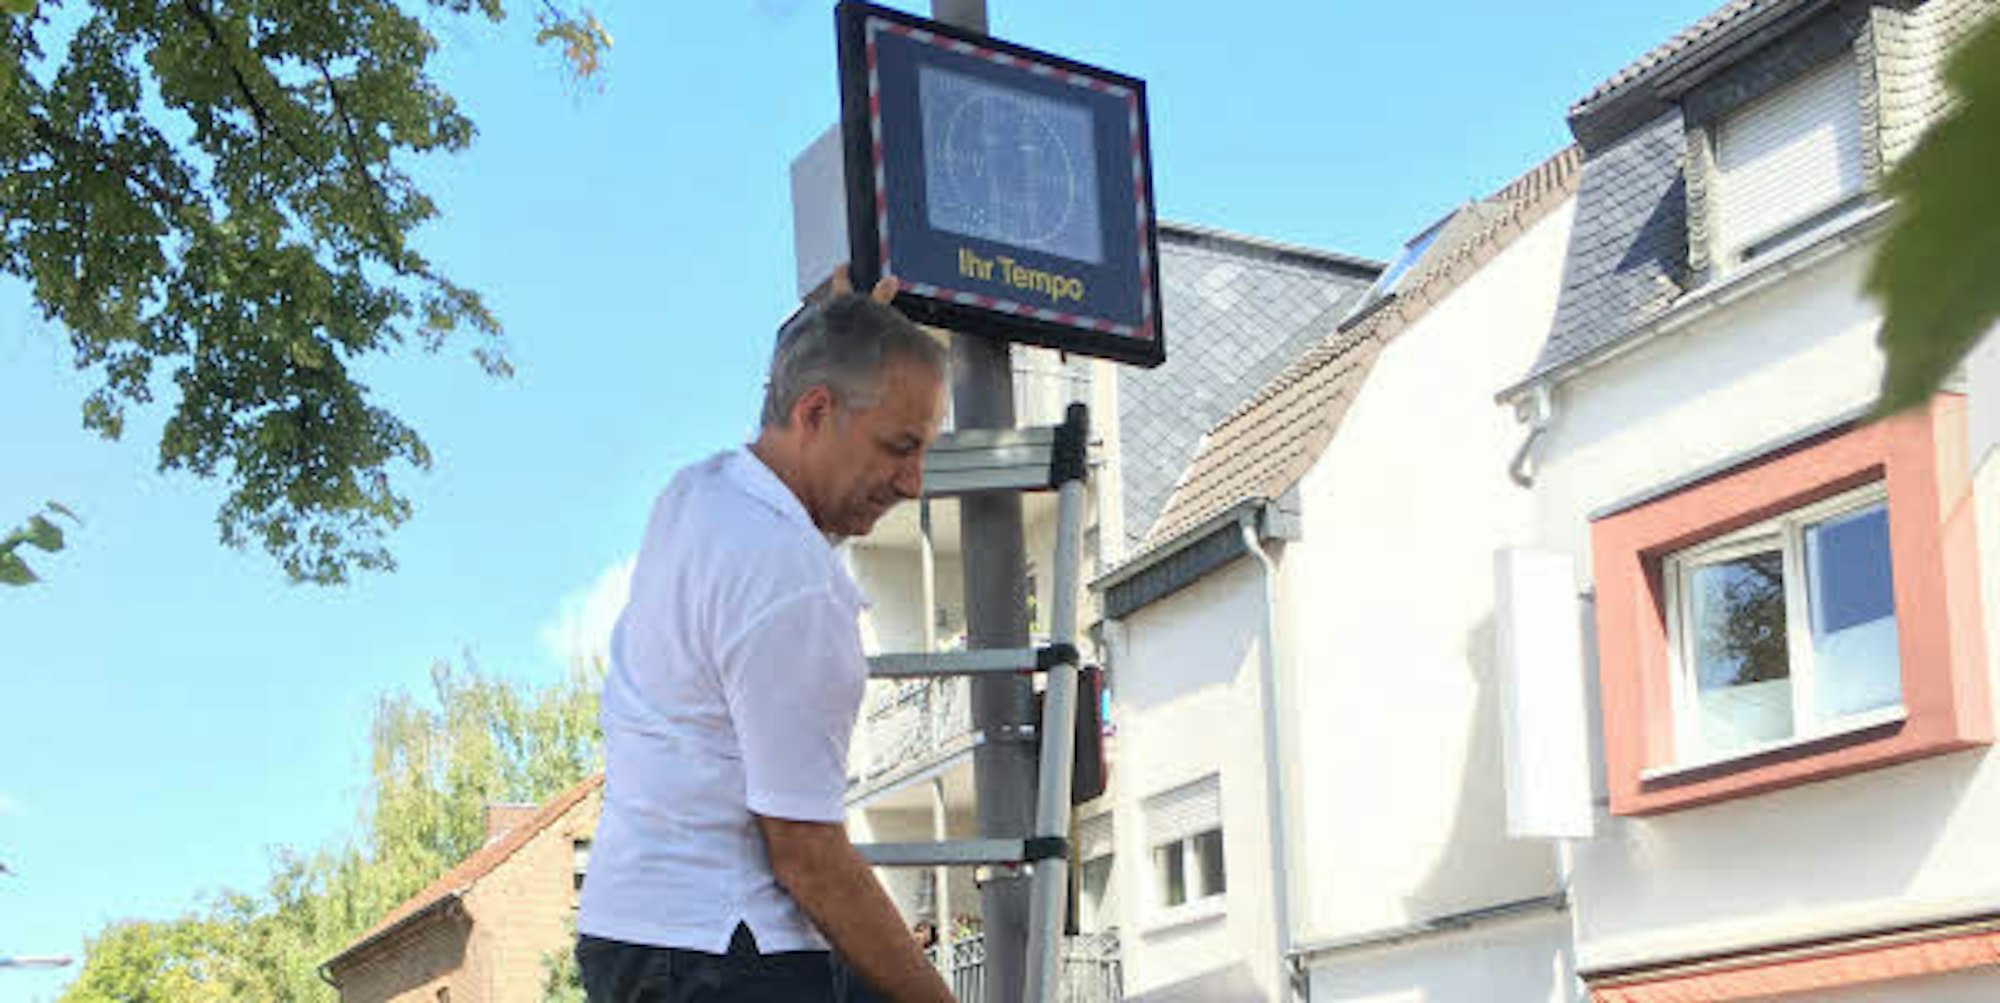 Hans Baedorf an der Grundschule Hohe Straße, wo derzeit ein mobiles Geschwindigkeitsmessgerät Autofahrer zum Langsamfahren ermuntert.